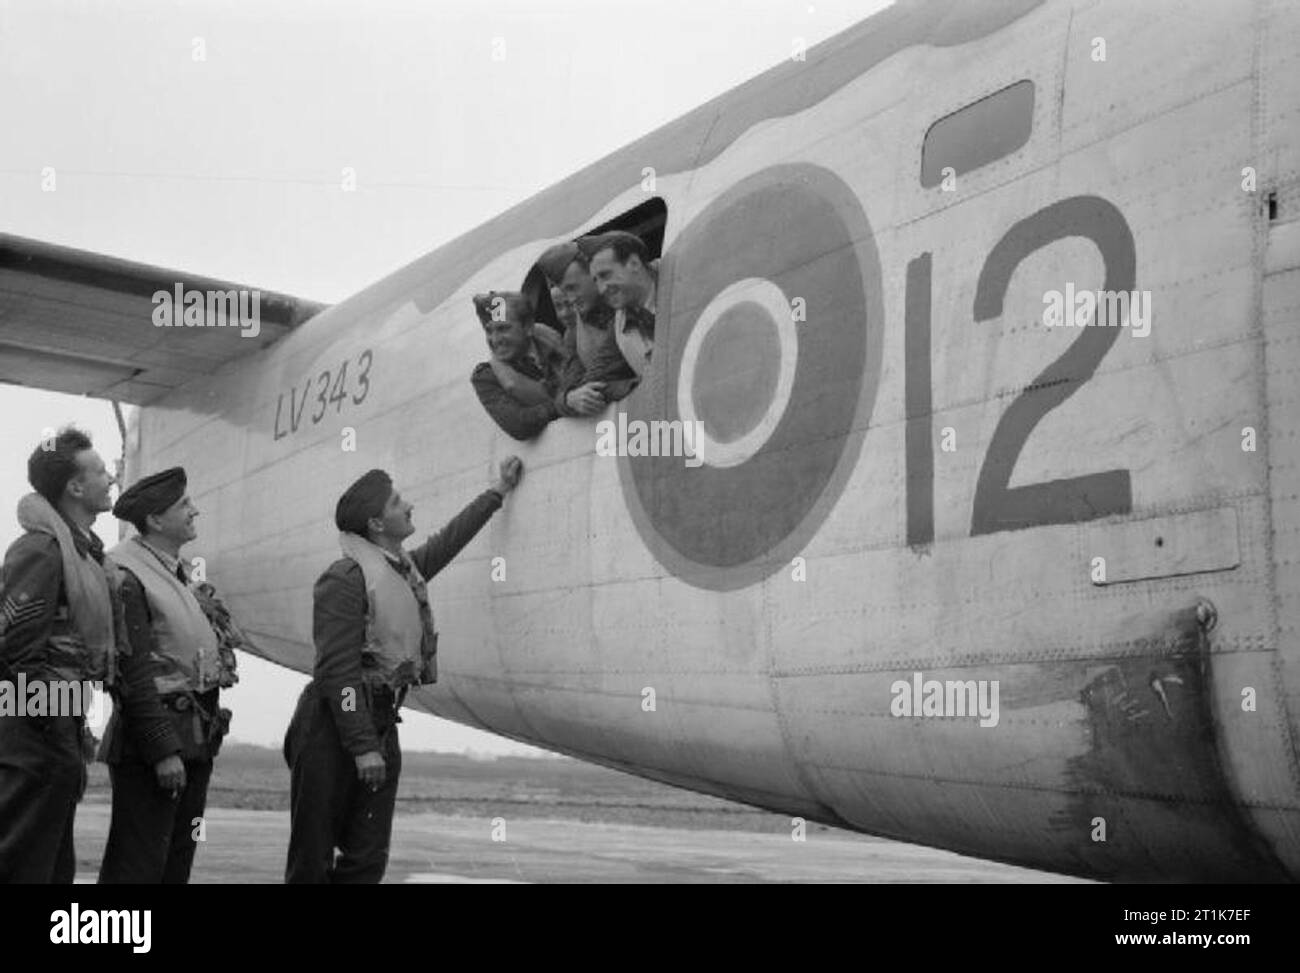 Royal Air Force 1939-1945- Coastal Command un libérateur de l'équipe No 311 (République tchèque) Squadron à Beaulieu, 21 juillet 1943. L'aéronef est un Mk IIA, numéro de série LV343. Banque D'Images